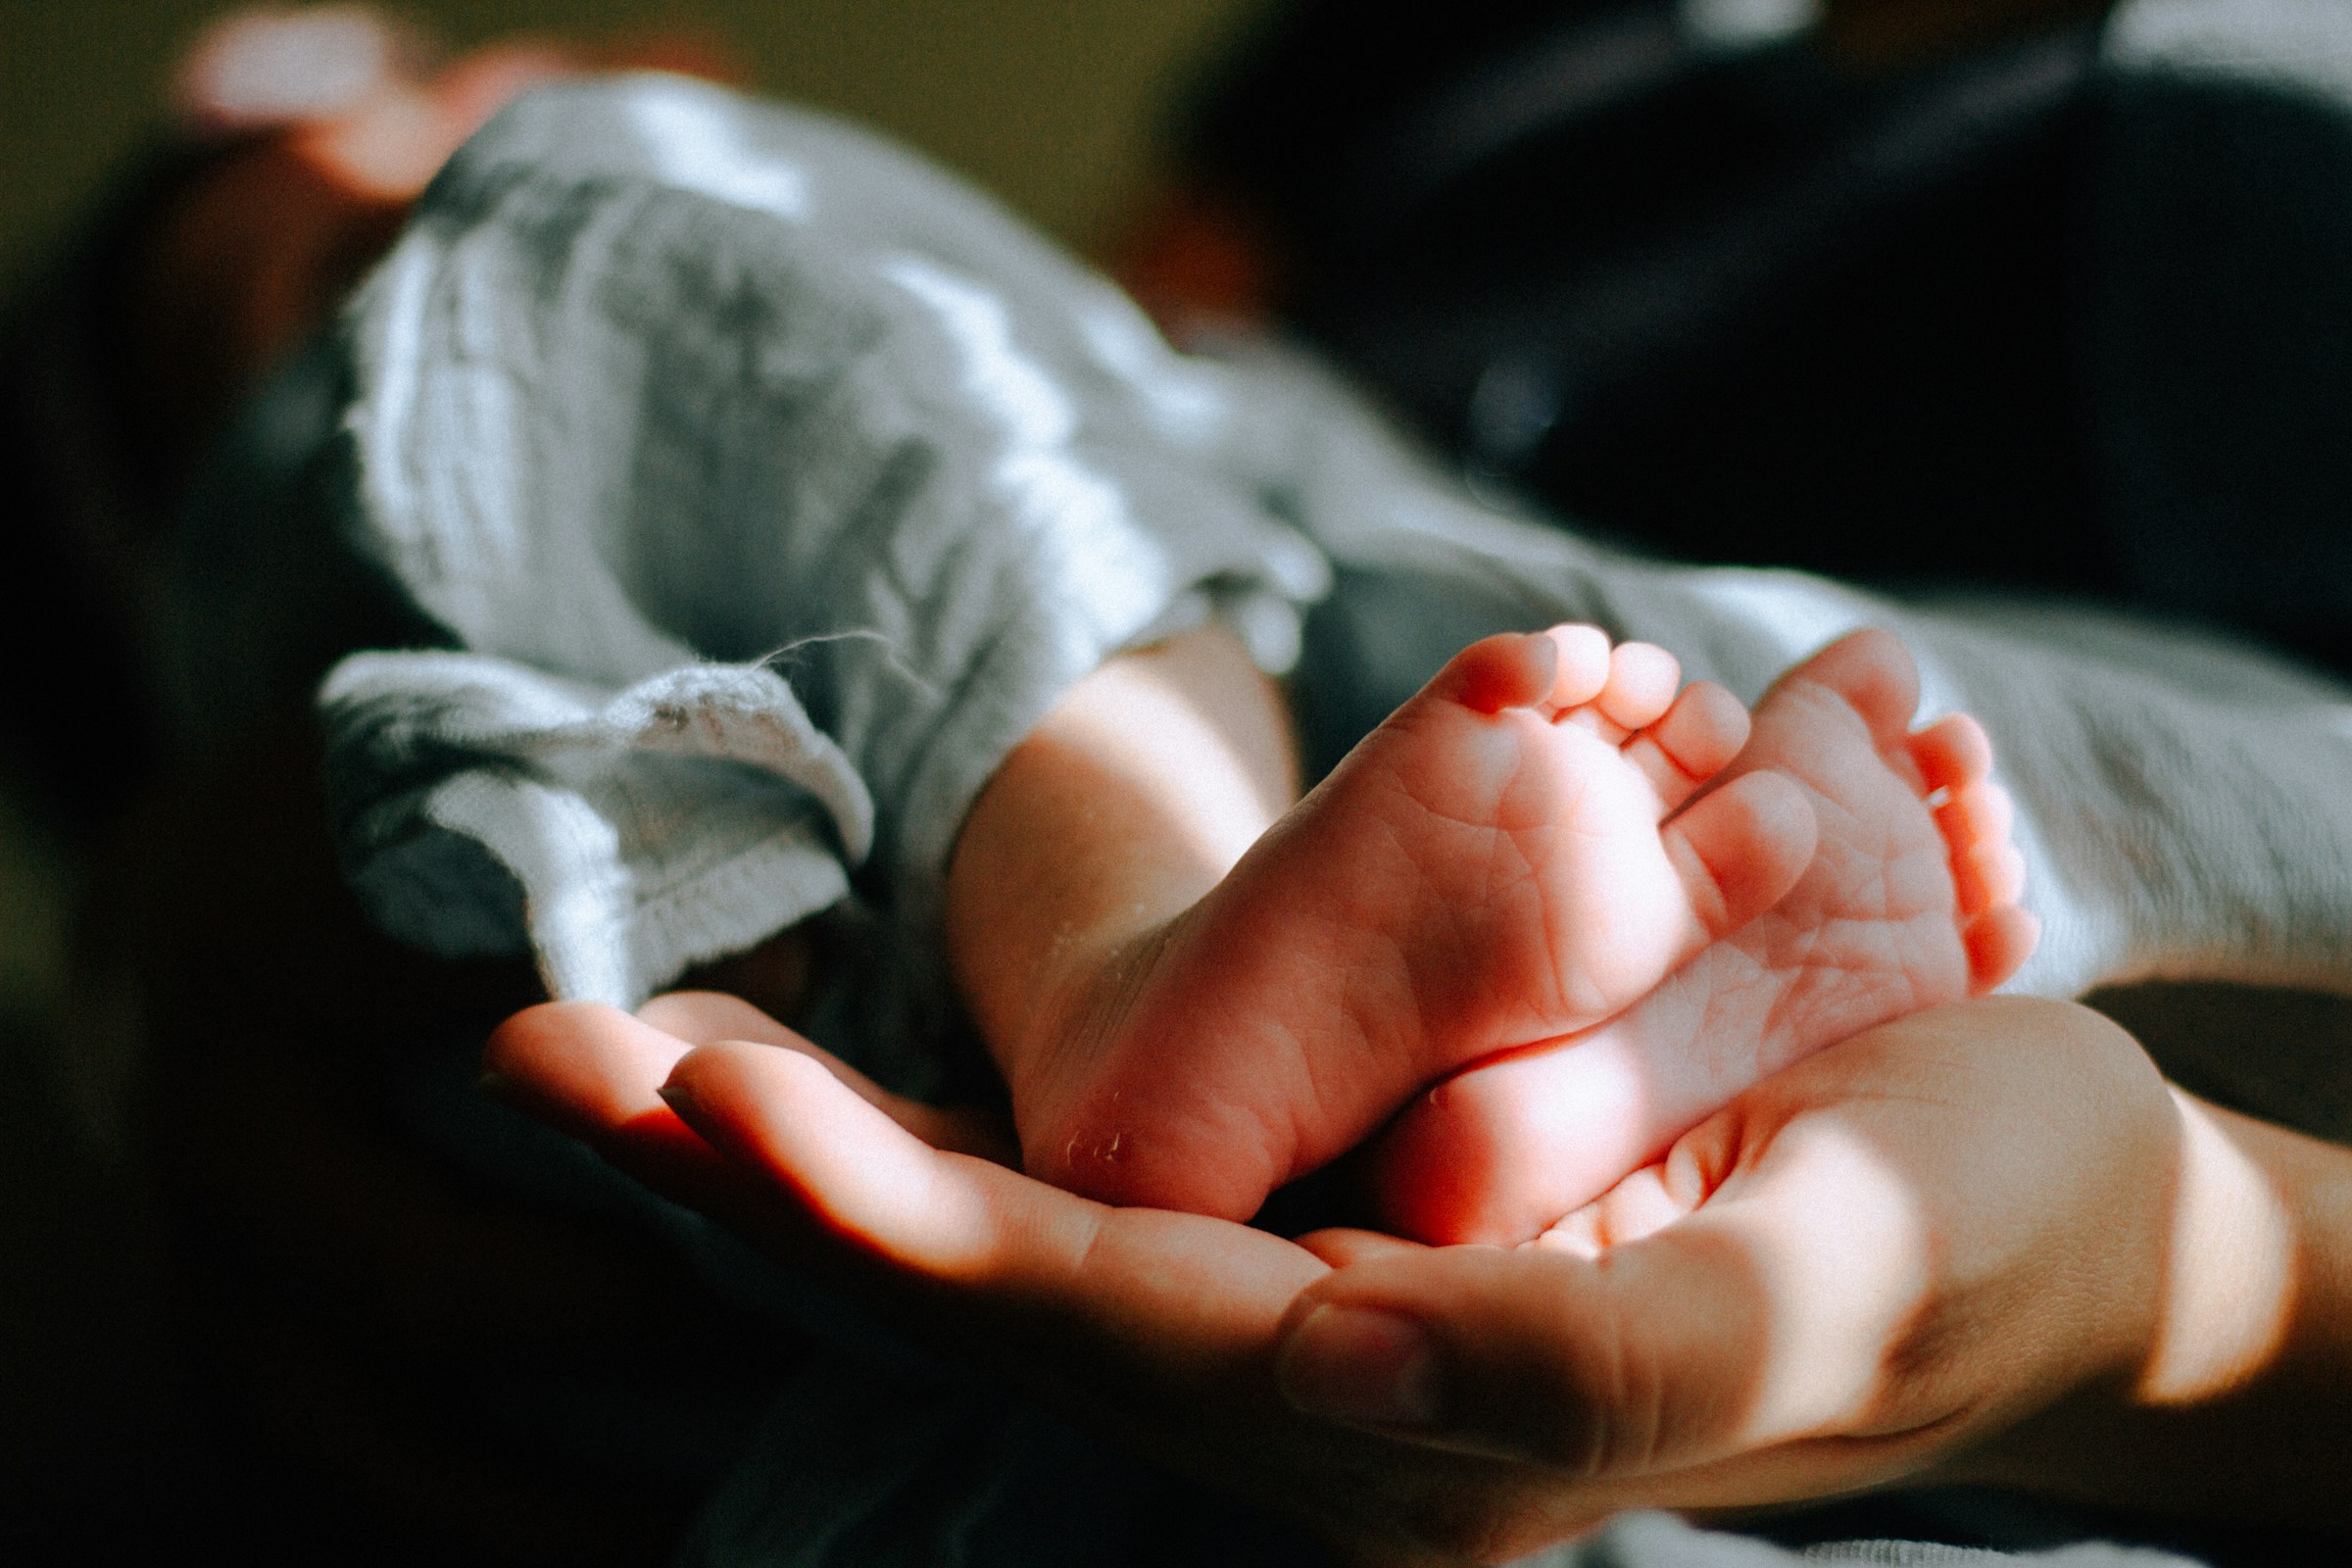 Newborn baby feet | Source: Unsplash